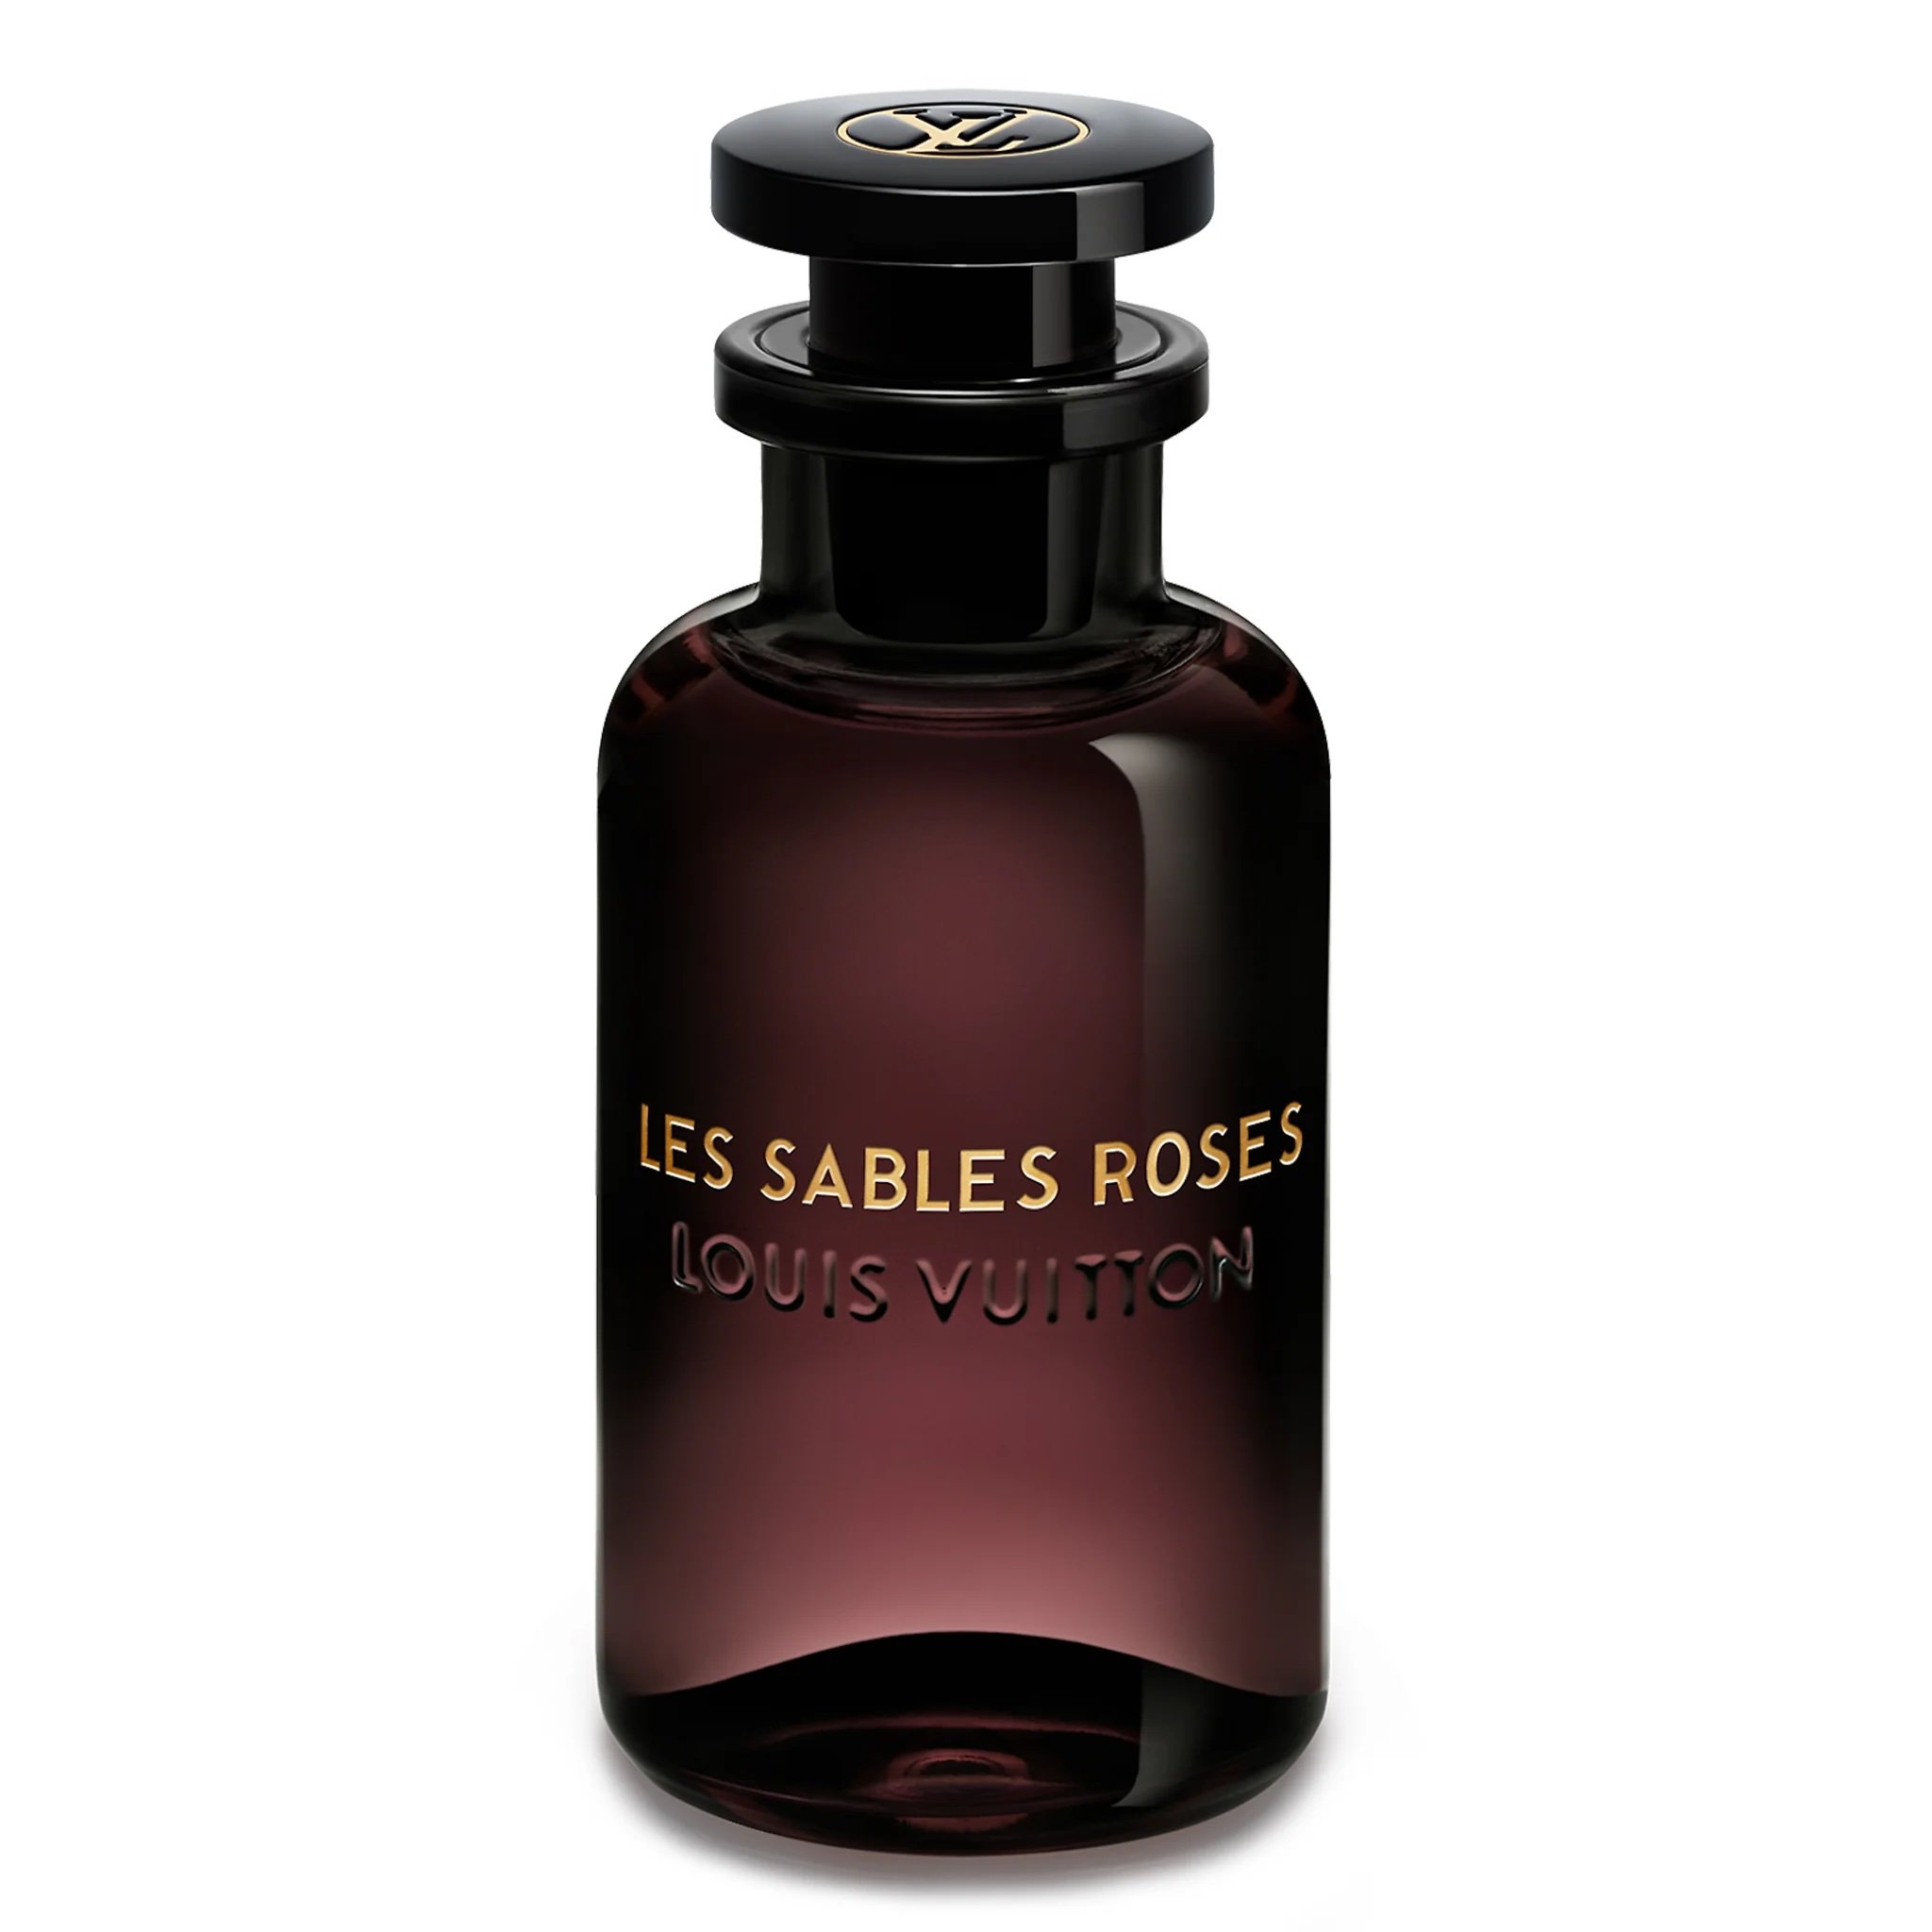 Louis-Vuitton-Les-Sables-Roses-Eau-De-Parfum-100ml-Crepslocker-Front.jpeg